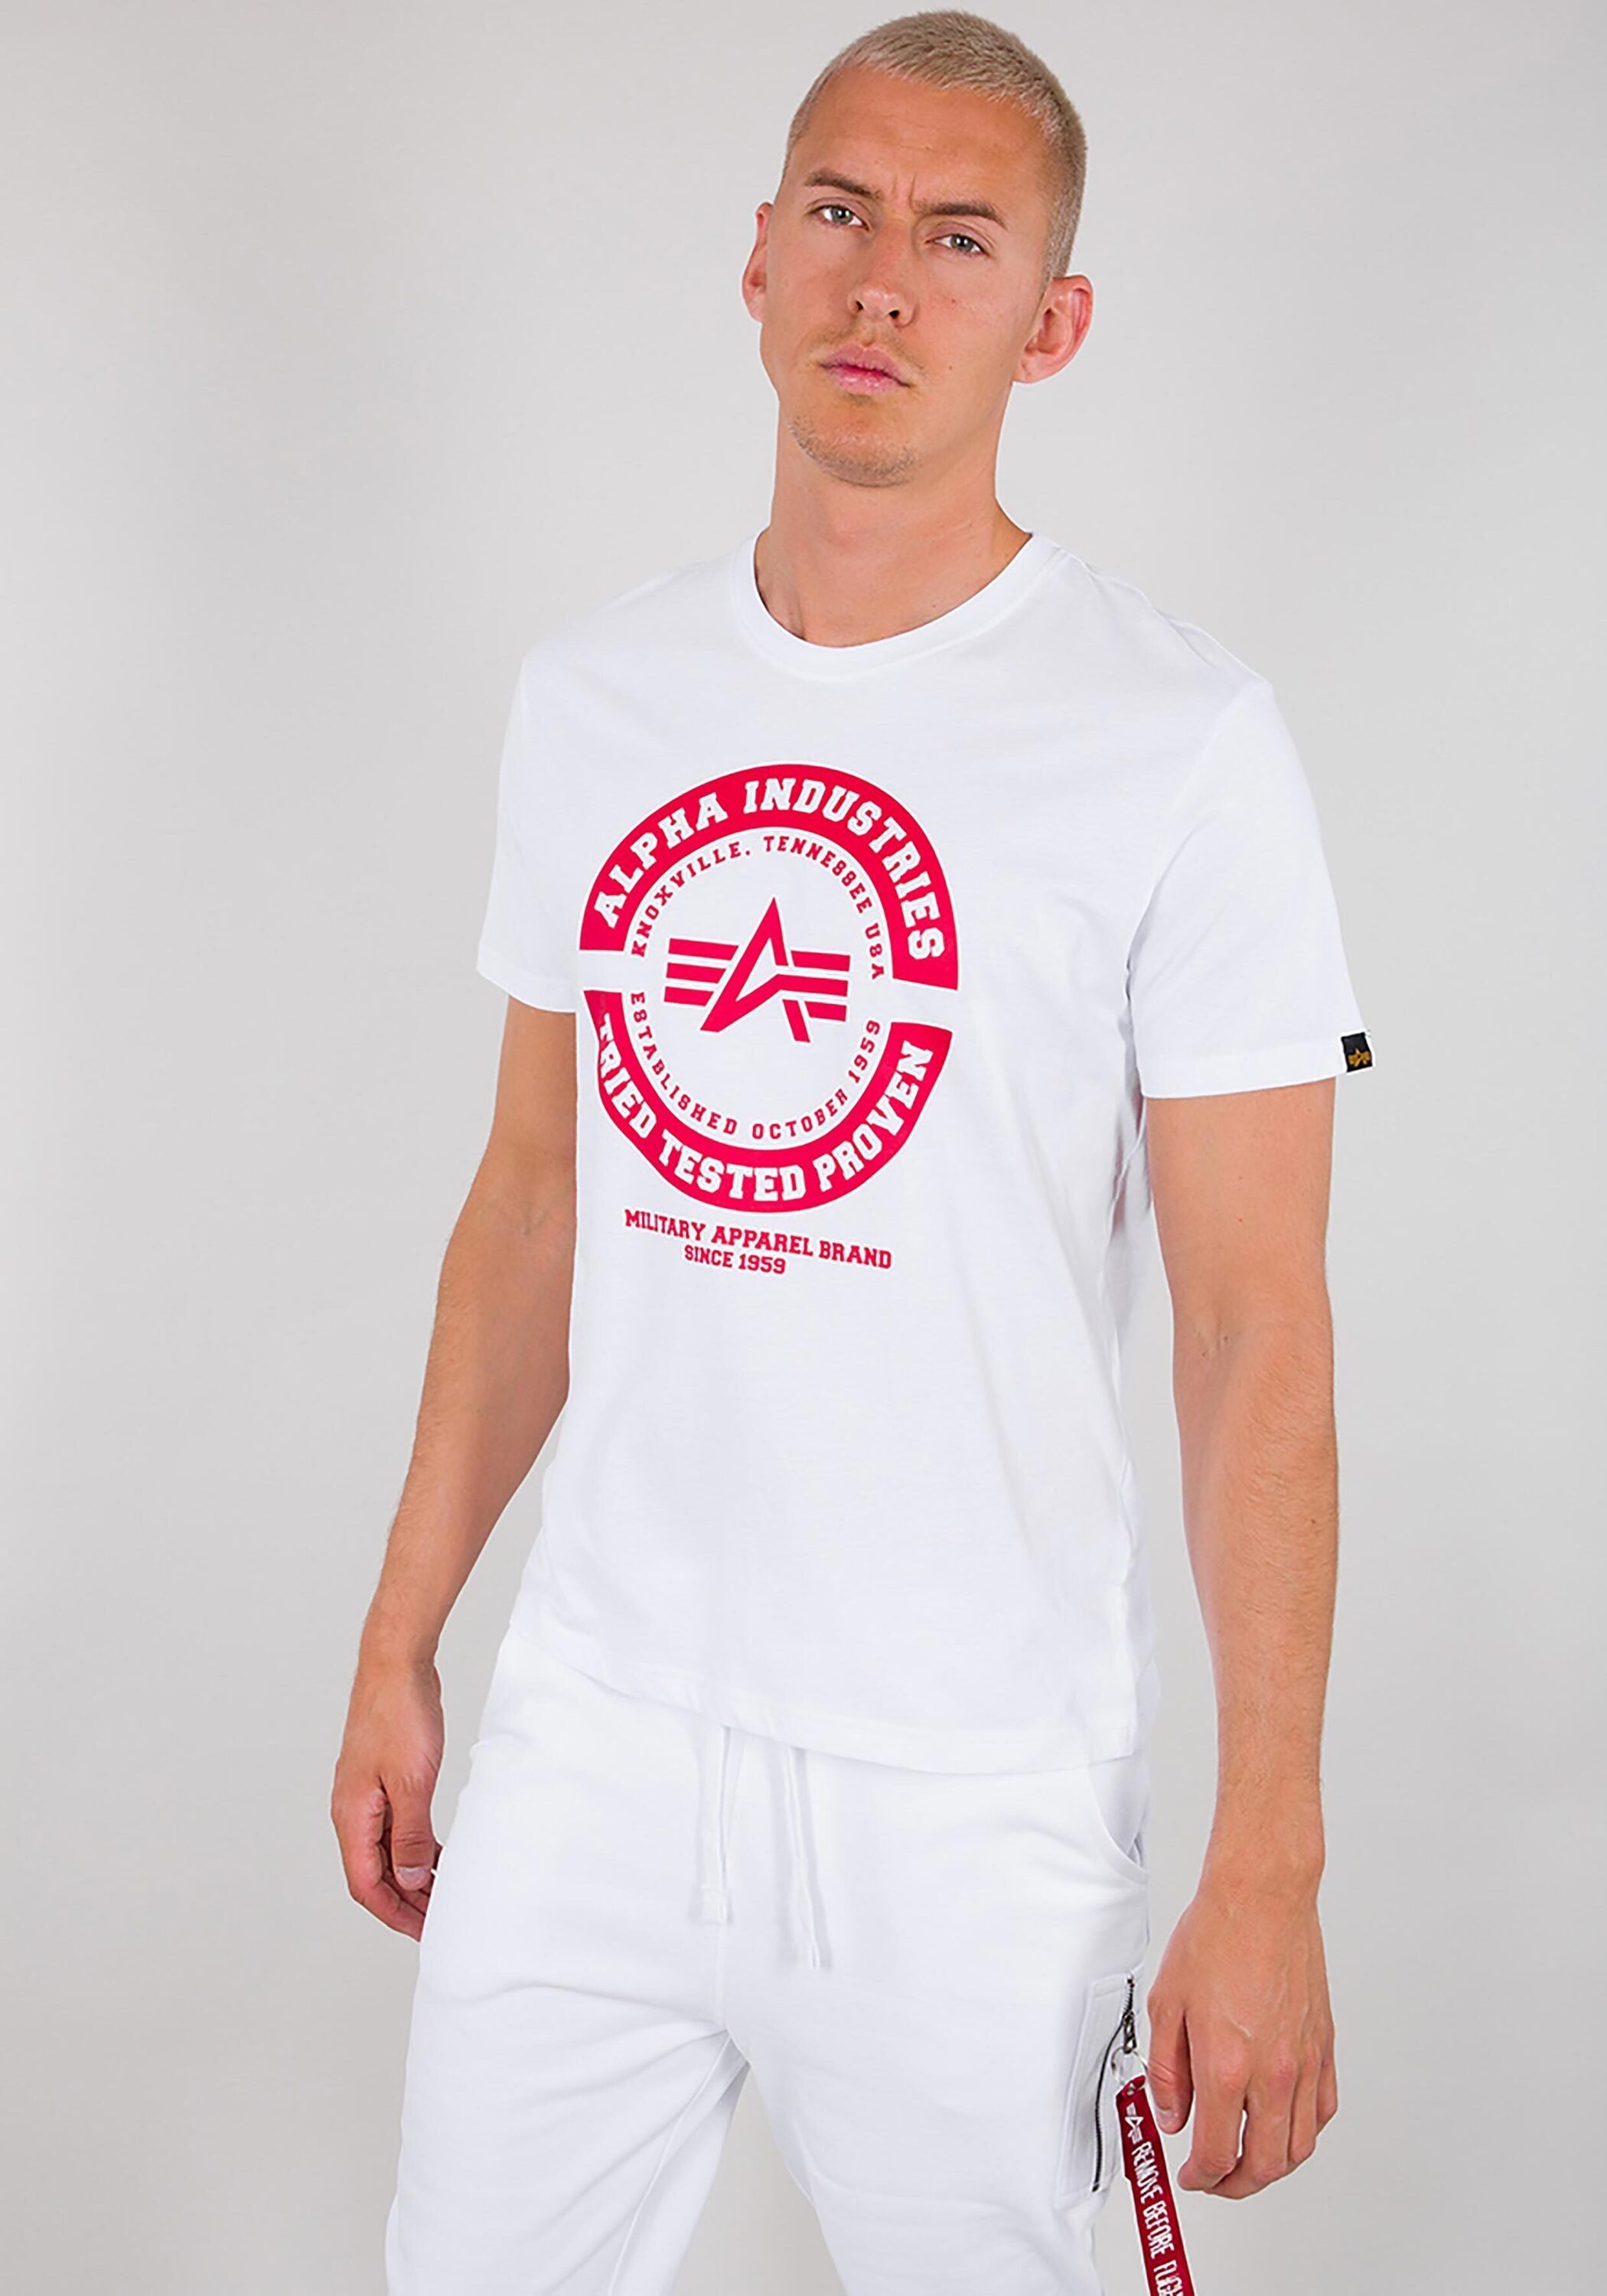 Alpha T-Shirts - Industries TTP T-Shirt Men T white Alpha Industries